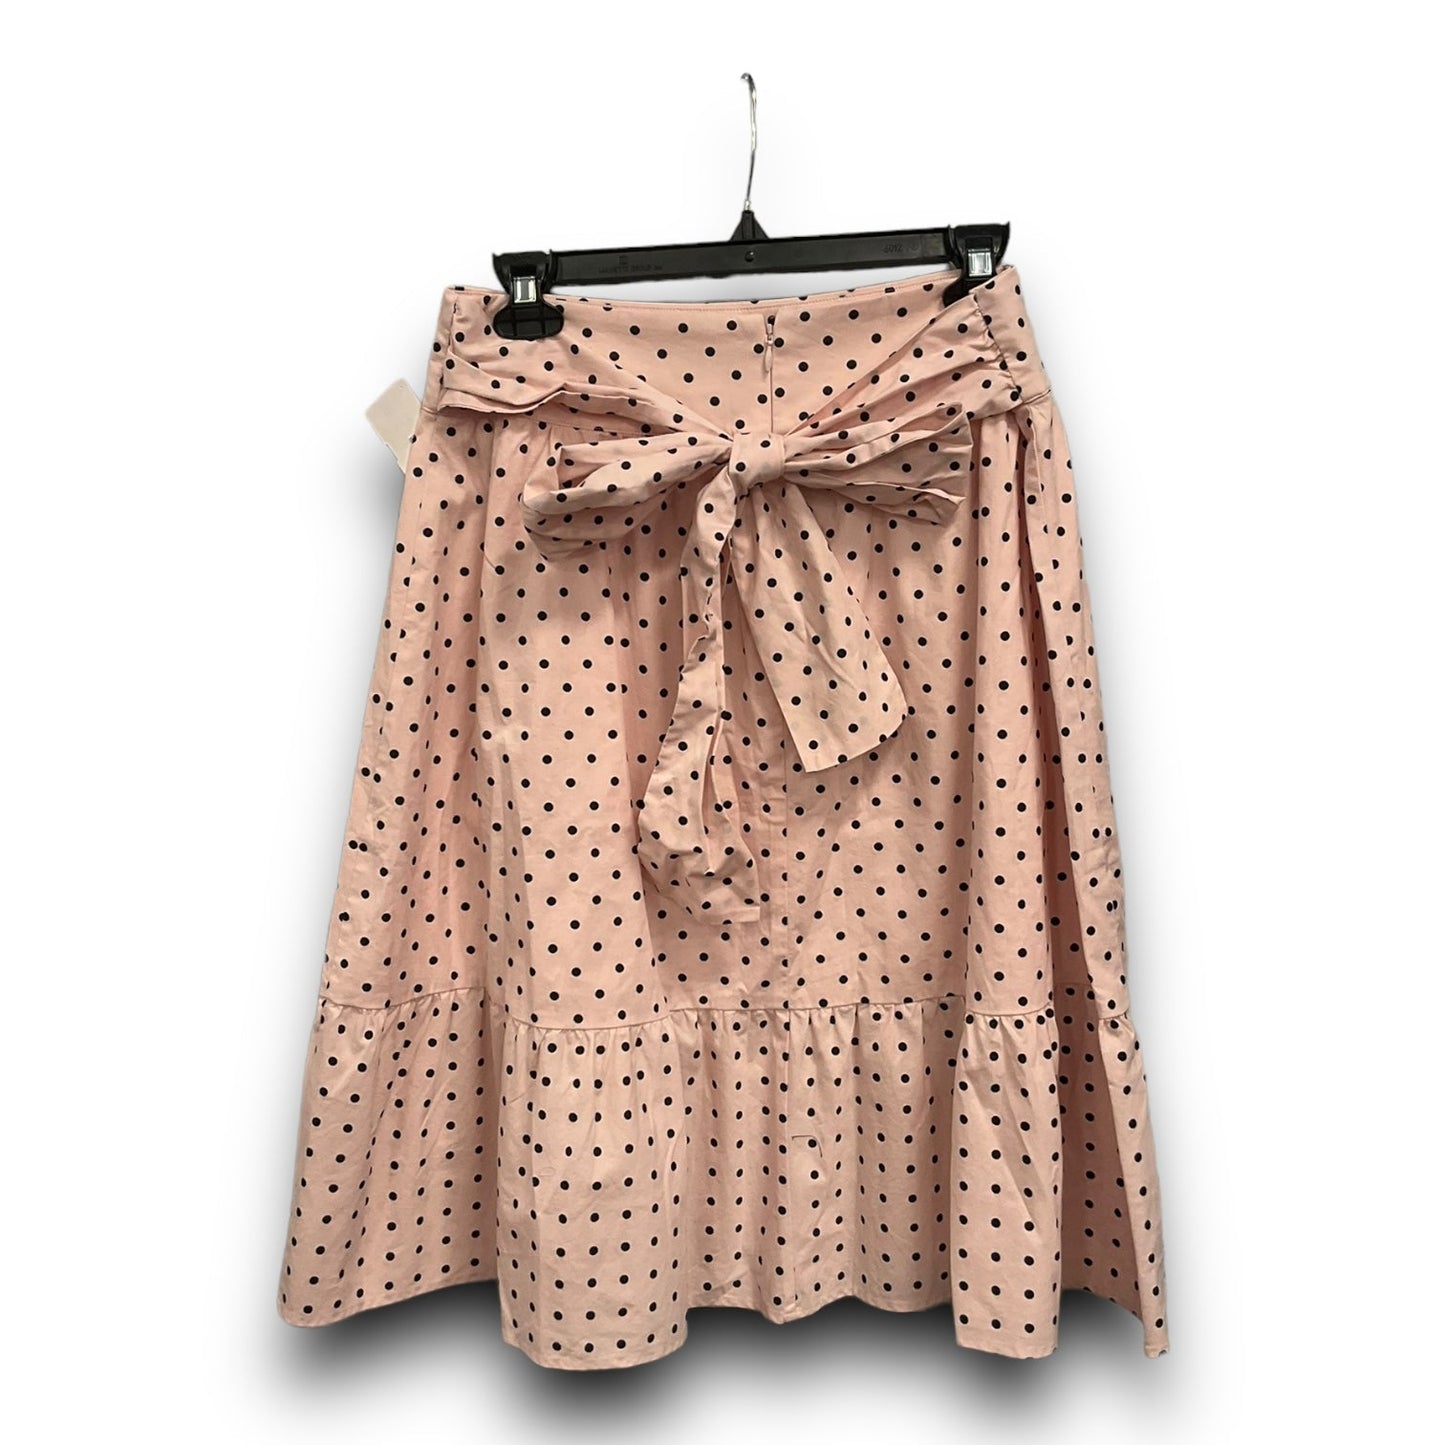 Polkadot Pattern Skirt Midi J. Crew, Size 4